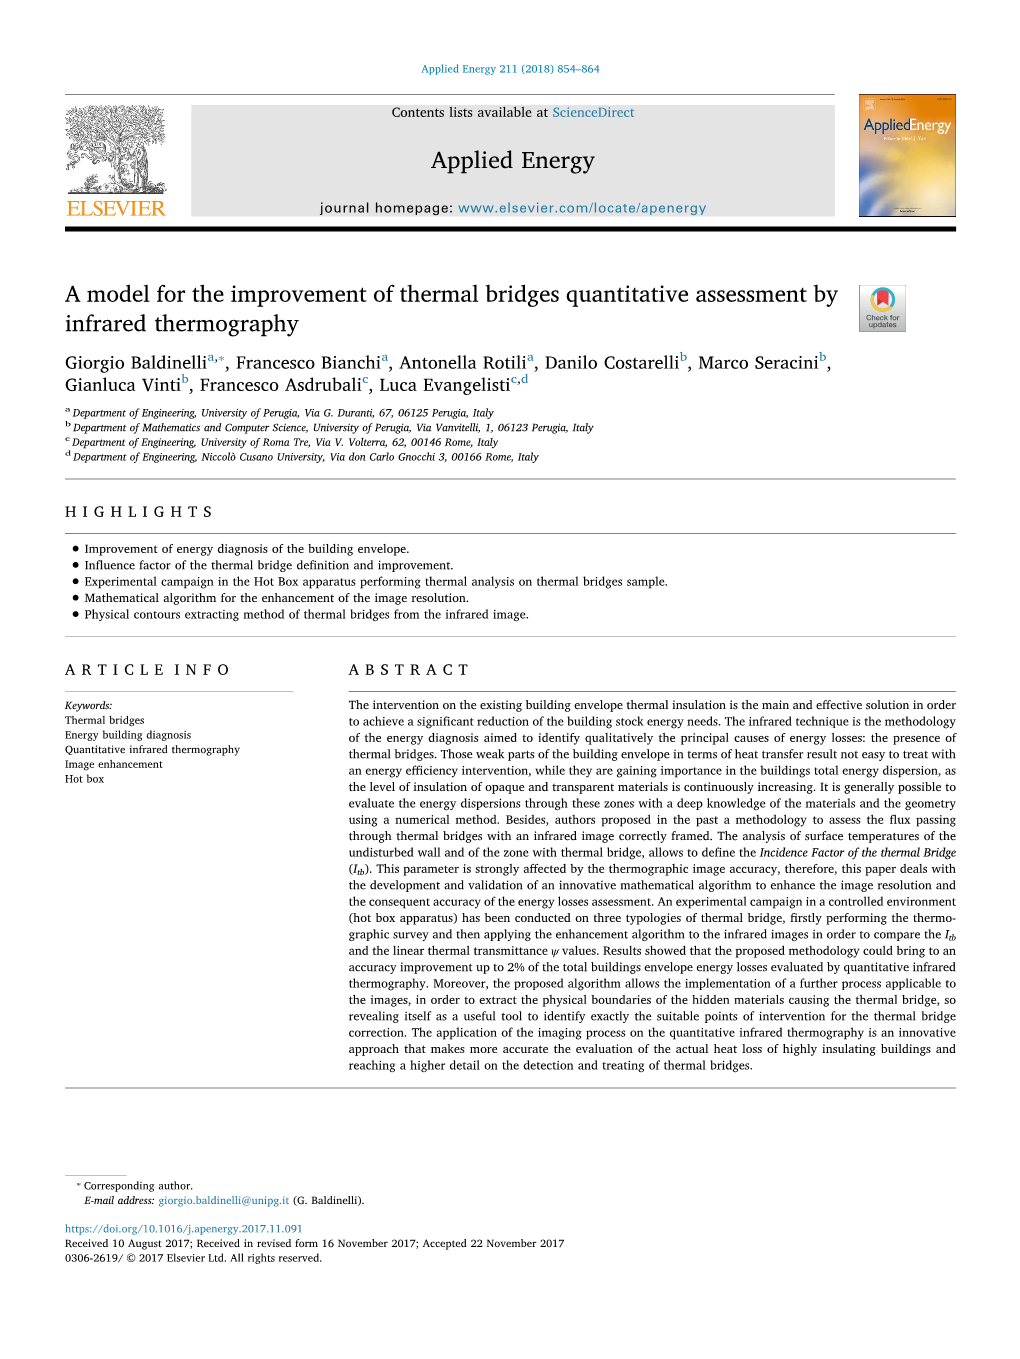 A Model for the Improvement of Thermal Bridges Quantitative